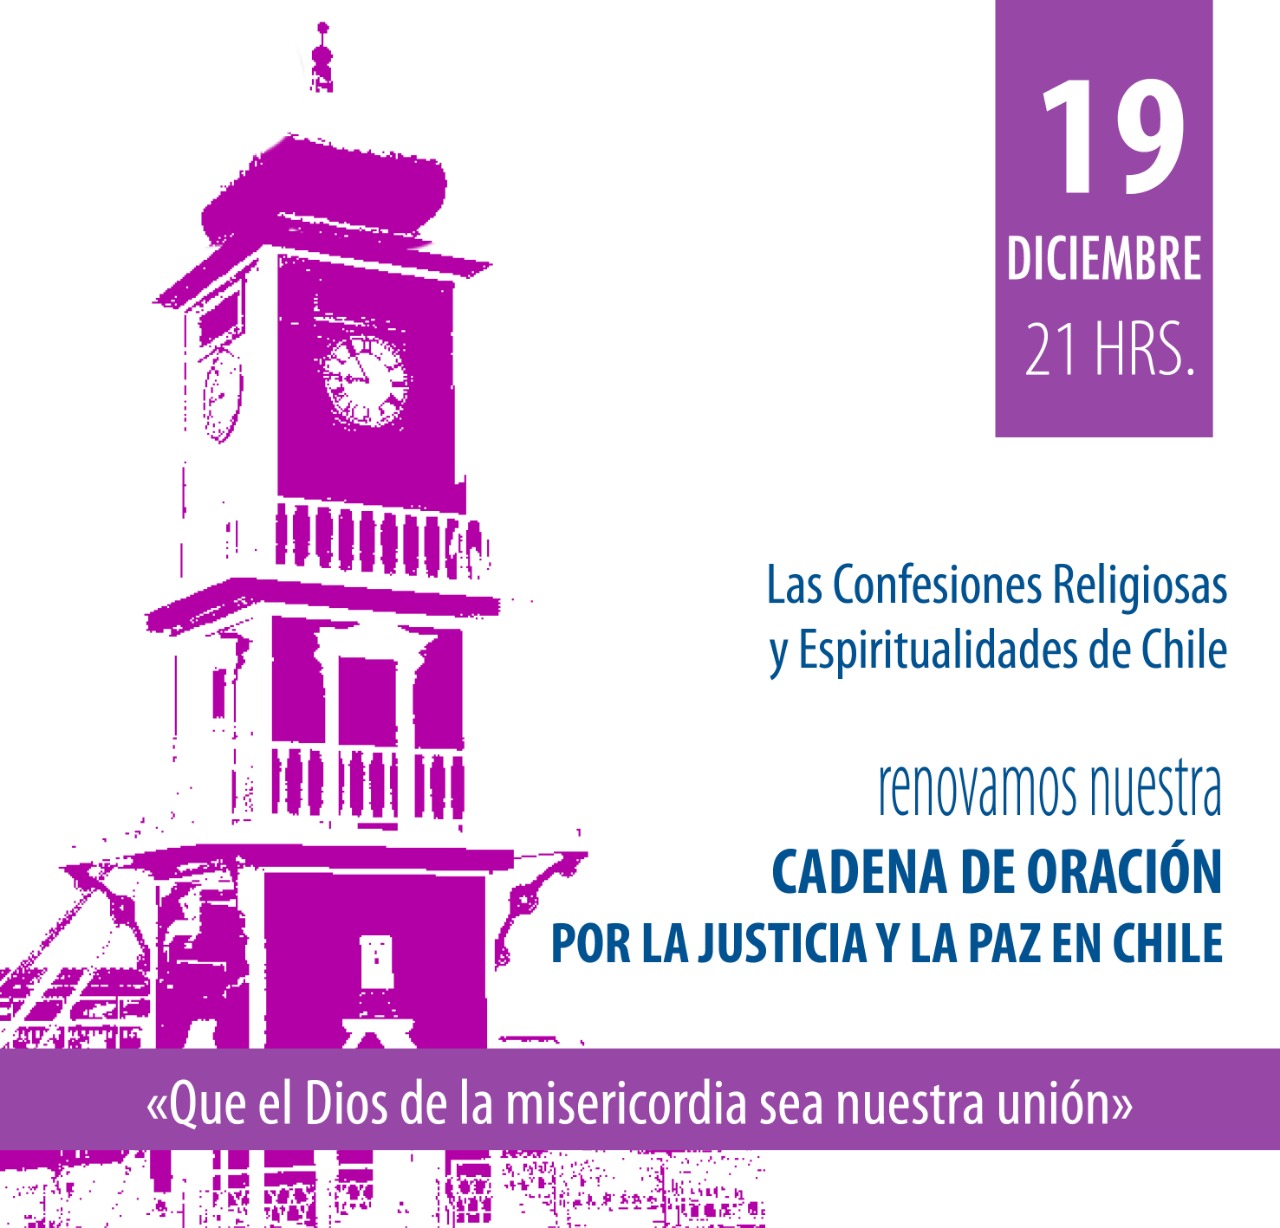 Oración por la Paz y la Justicia en Chile